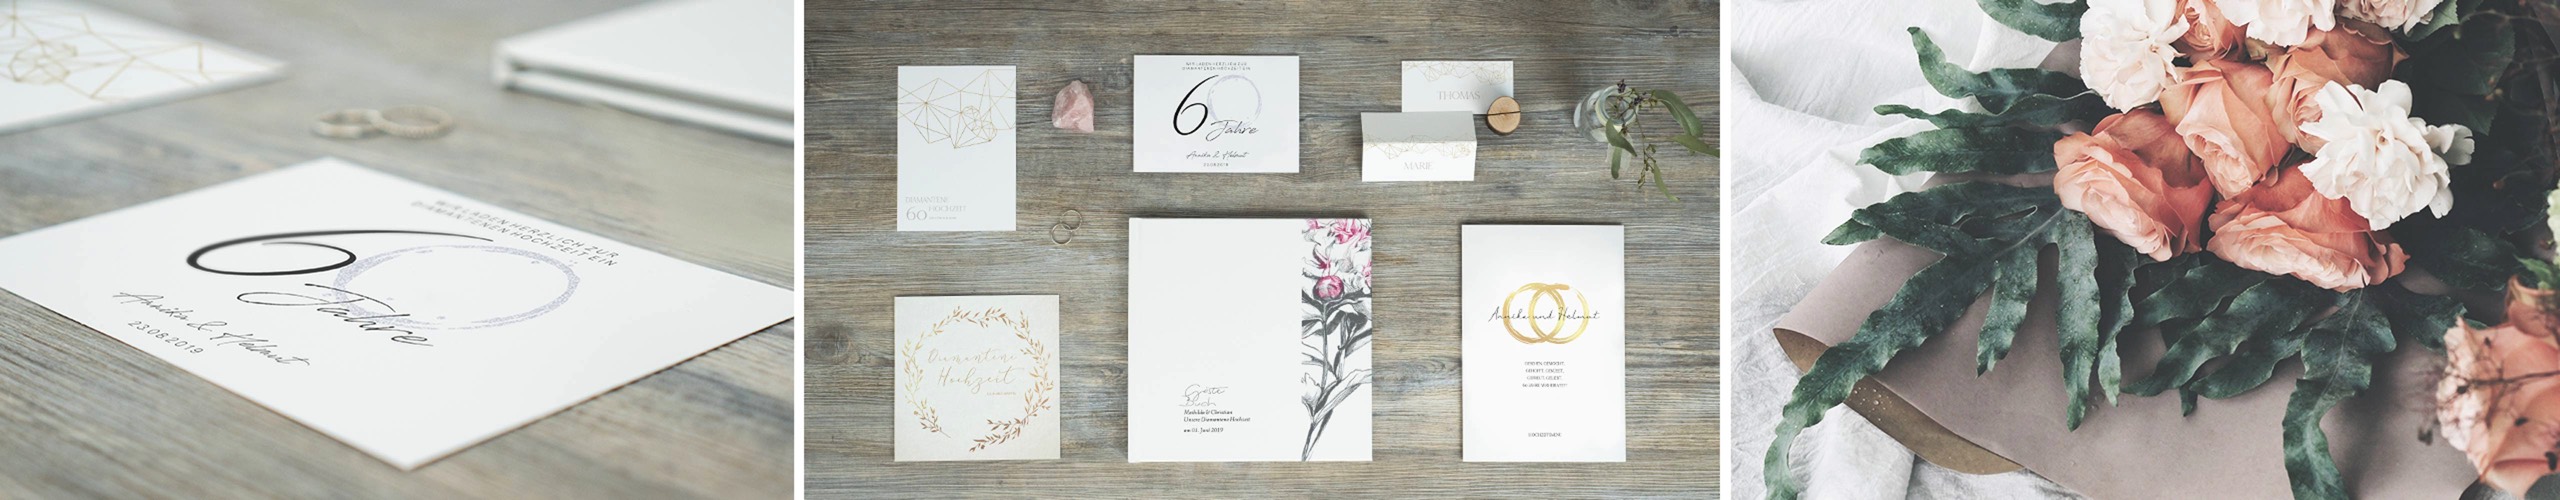 Karten Druckerei Fur Einladungen Und Danksagungen Zur Diamantenen Hochzeit